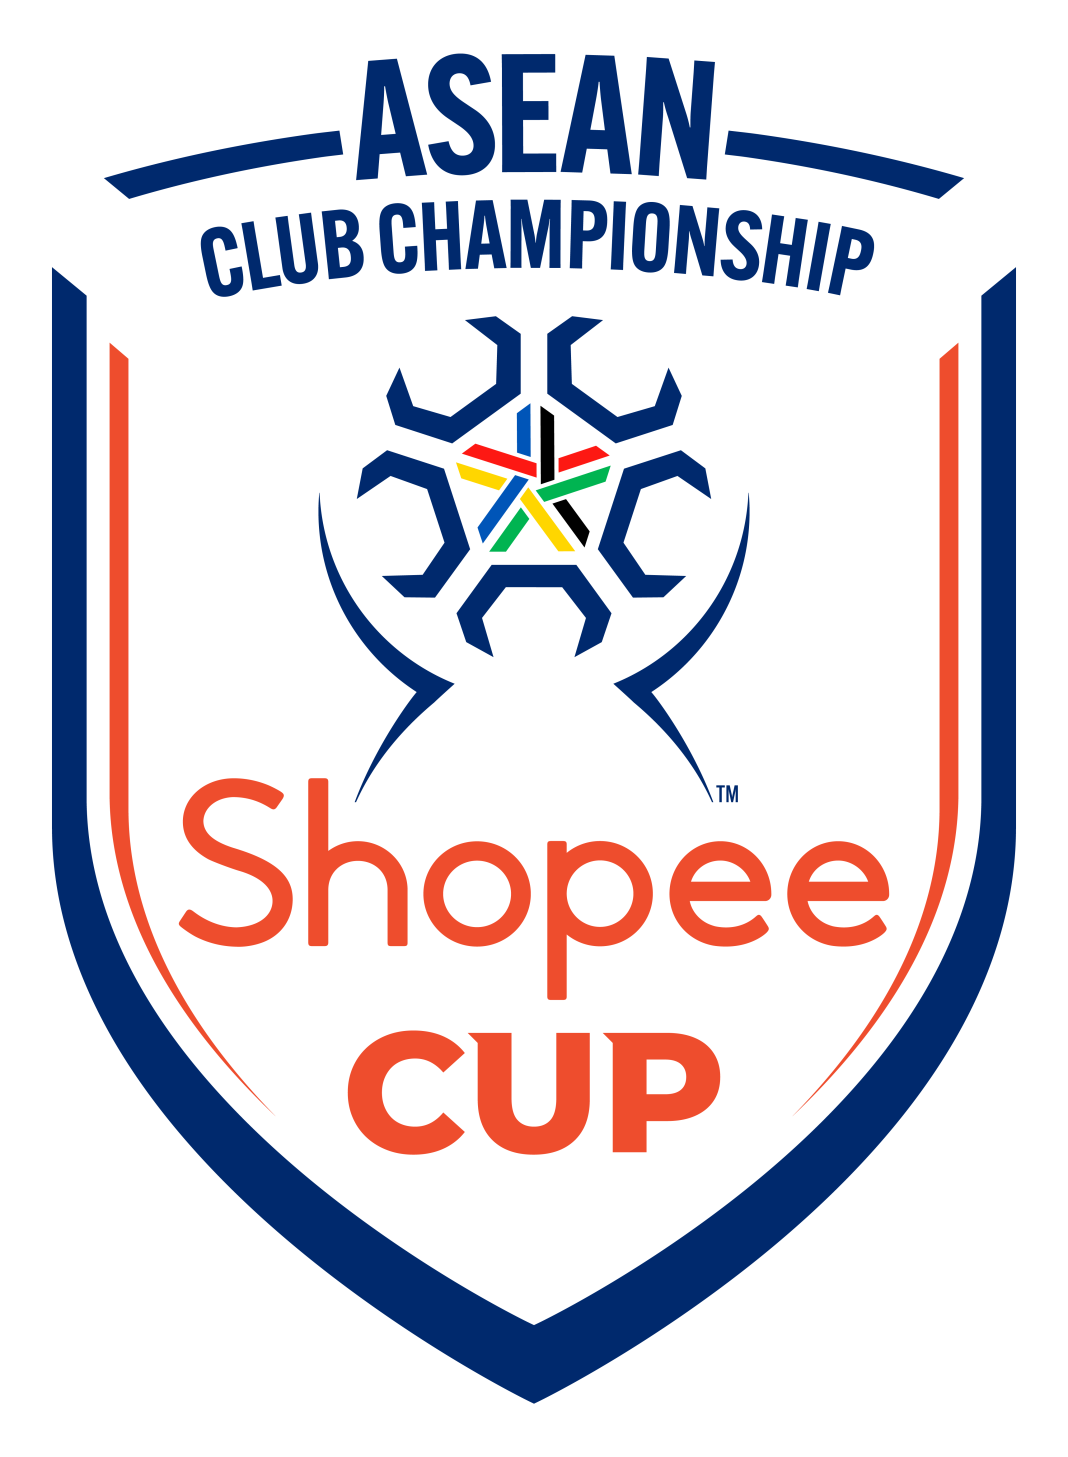 ASEAN Football Federation atau Federasi Sepak Bola ASEAN (AFF) telah mengumumkan Shopee sebagai mitra resmi, ASEAN Club Championship, yang bersama Shopee Cup